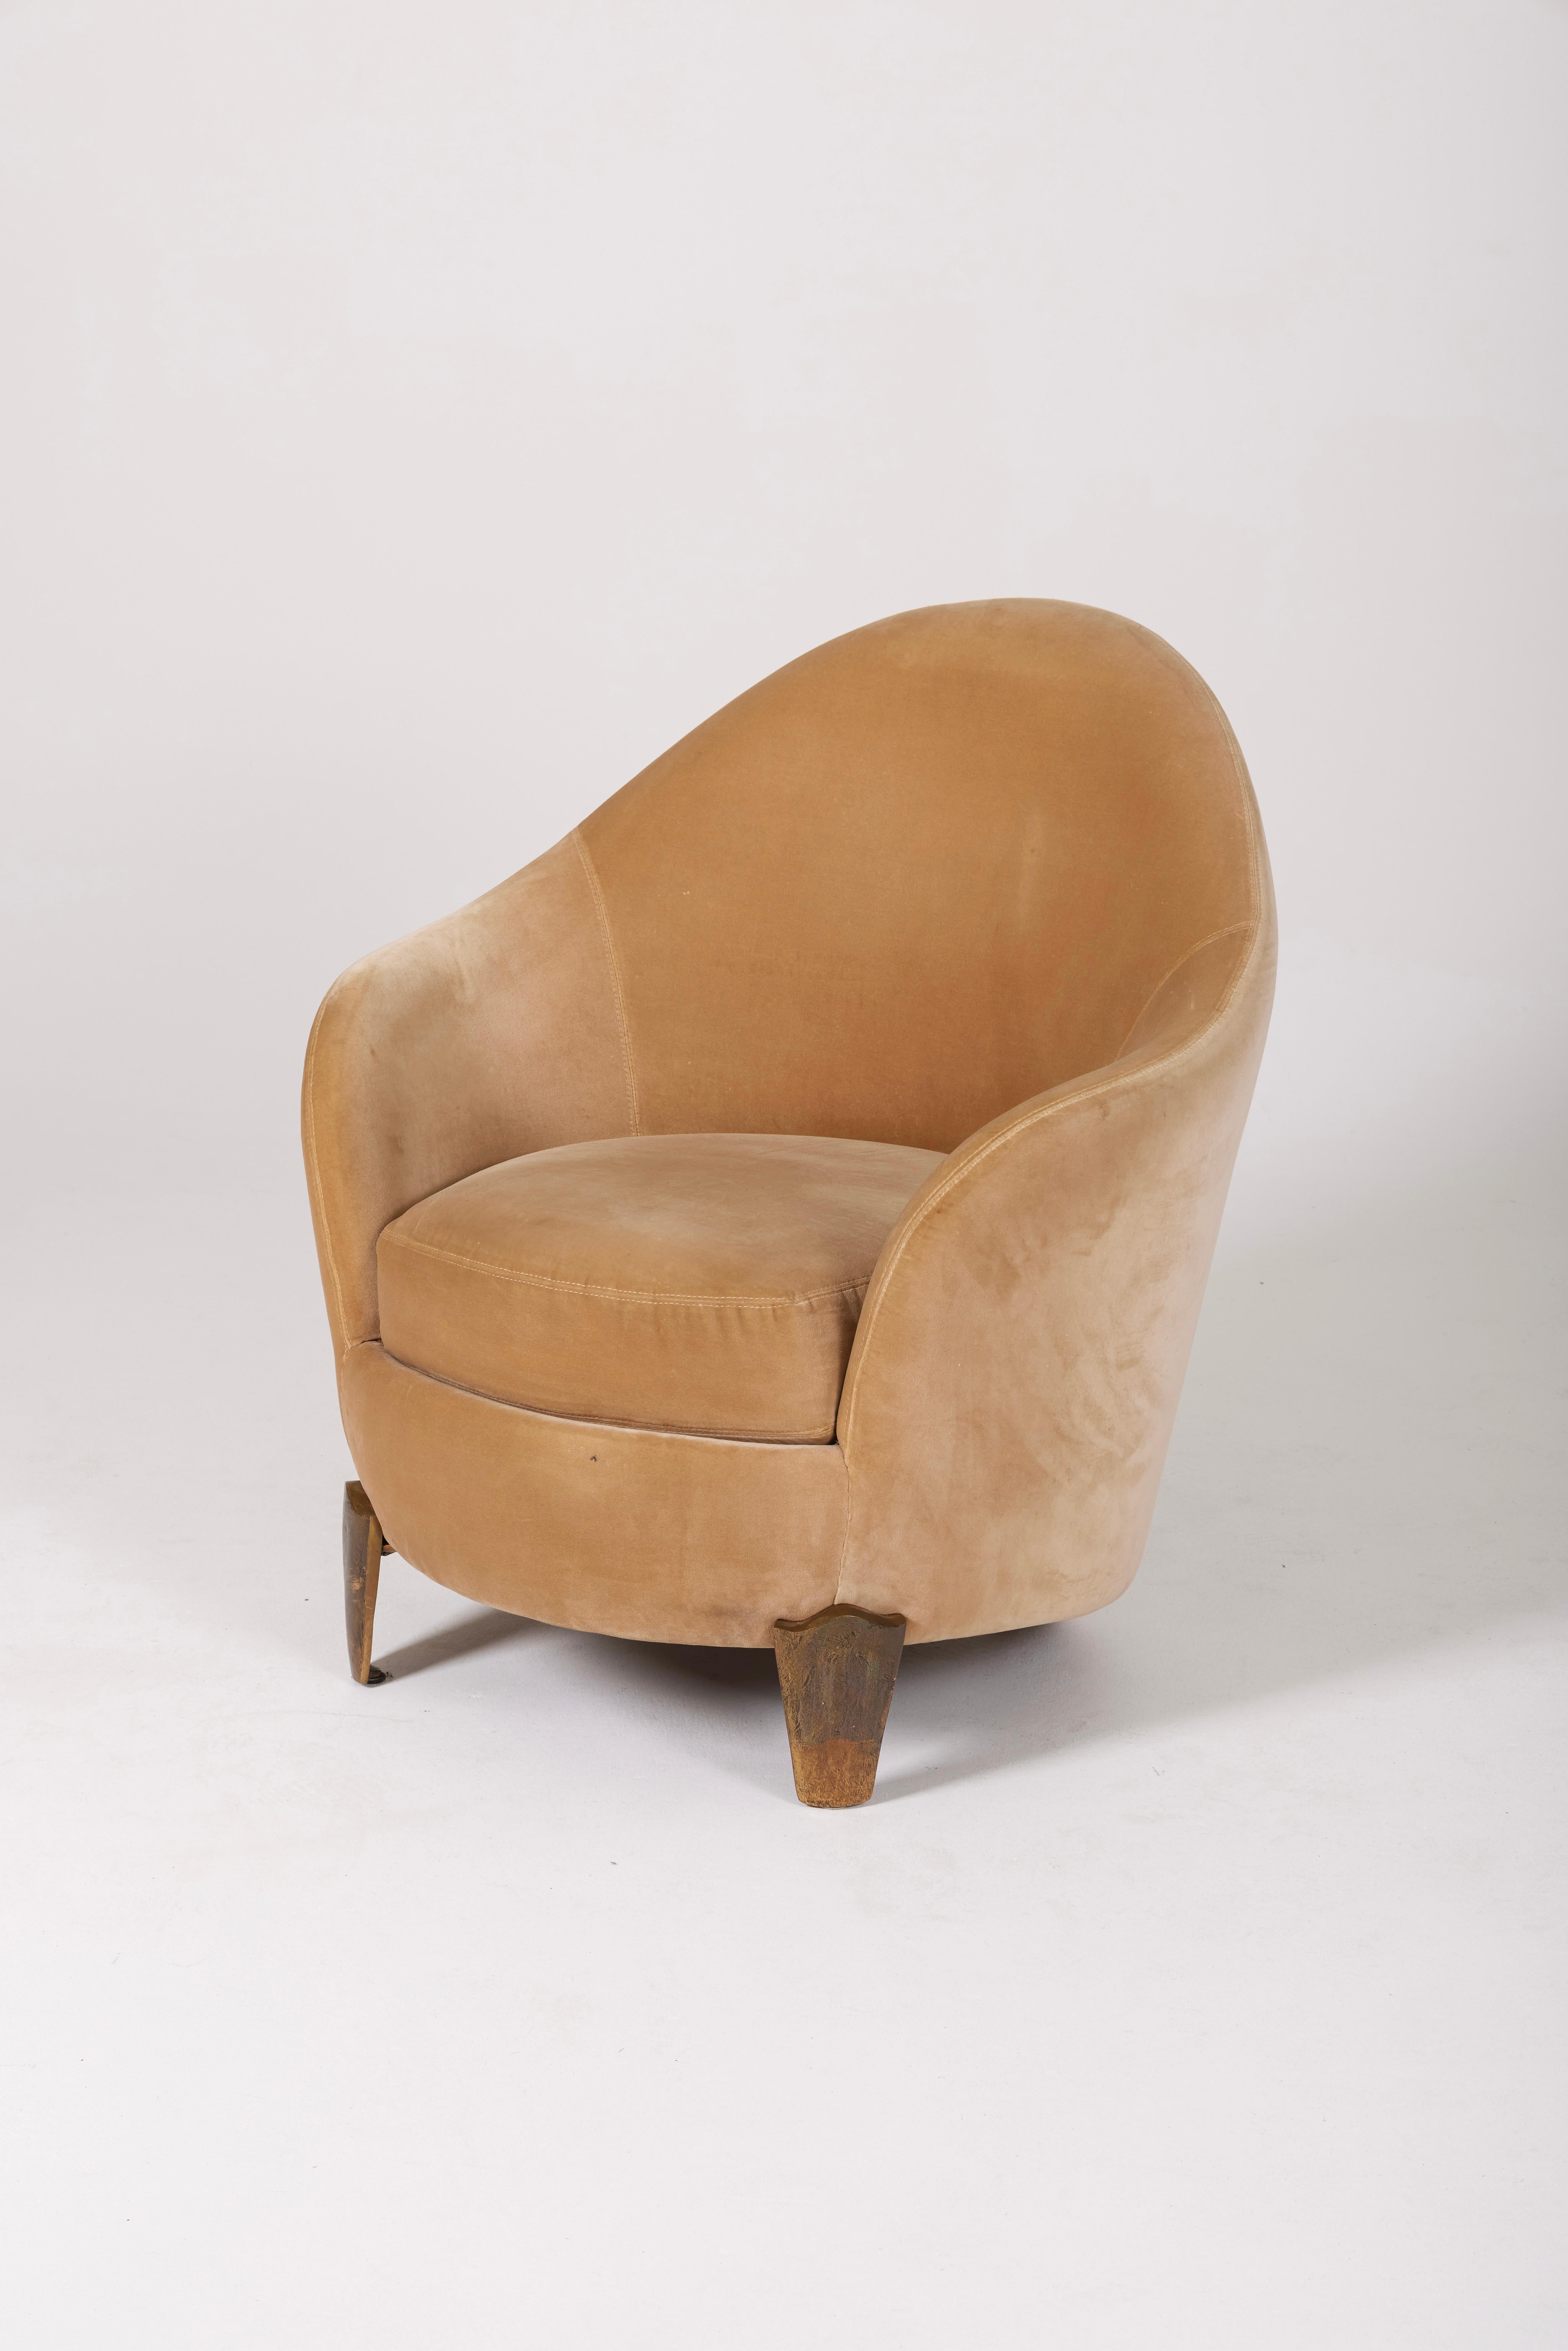 Koala armchair by designers Elizabeth Garouste and Mattia Bonetti from the 1990s. Gilded bronze base, wooden frame upholstered in gold velvet. Stamped 